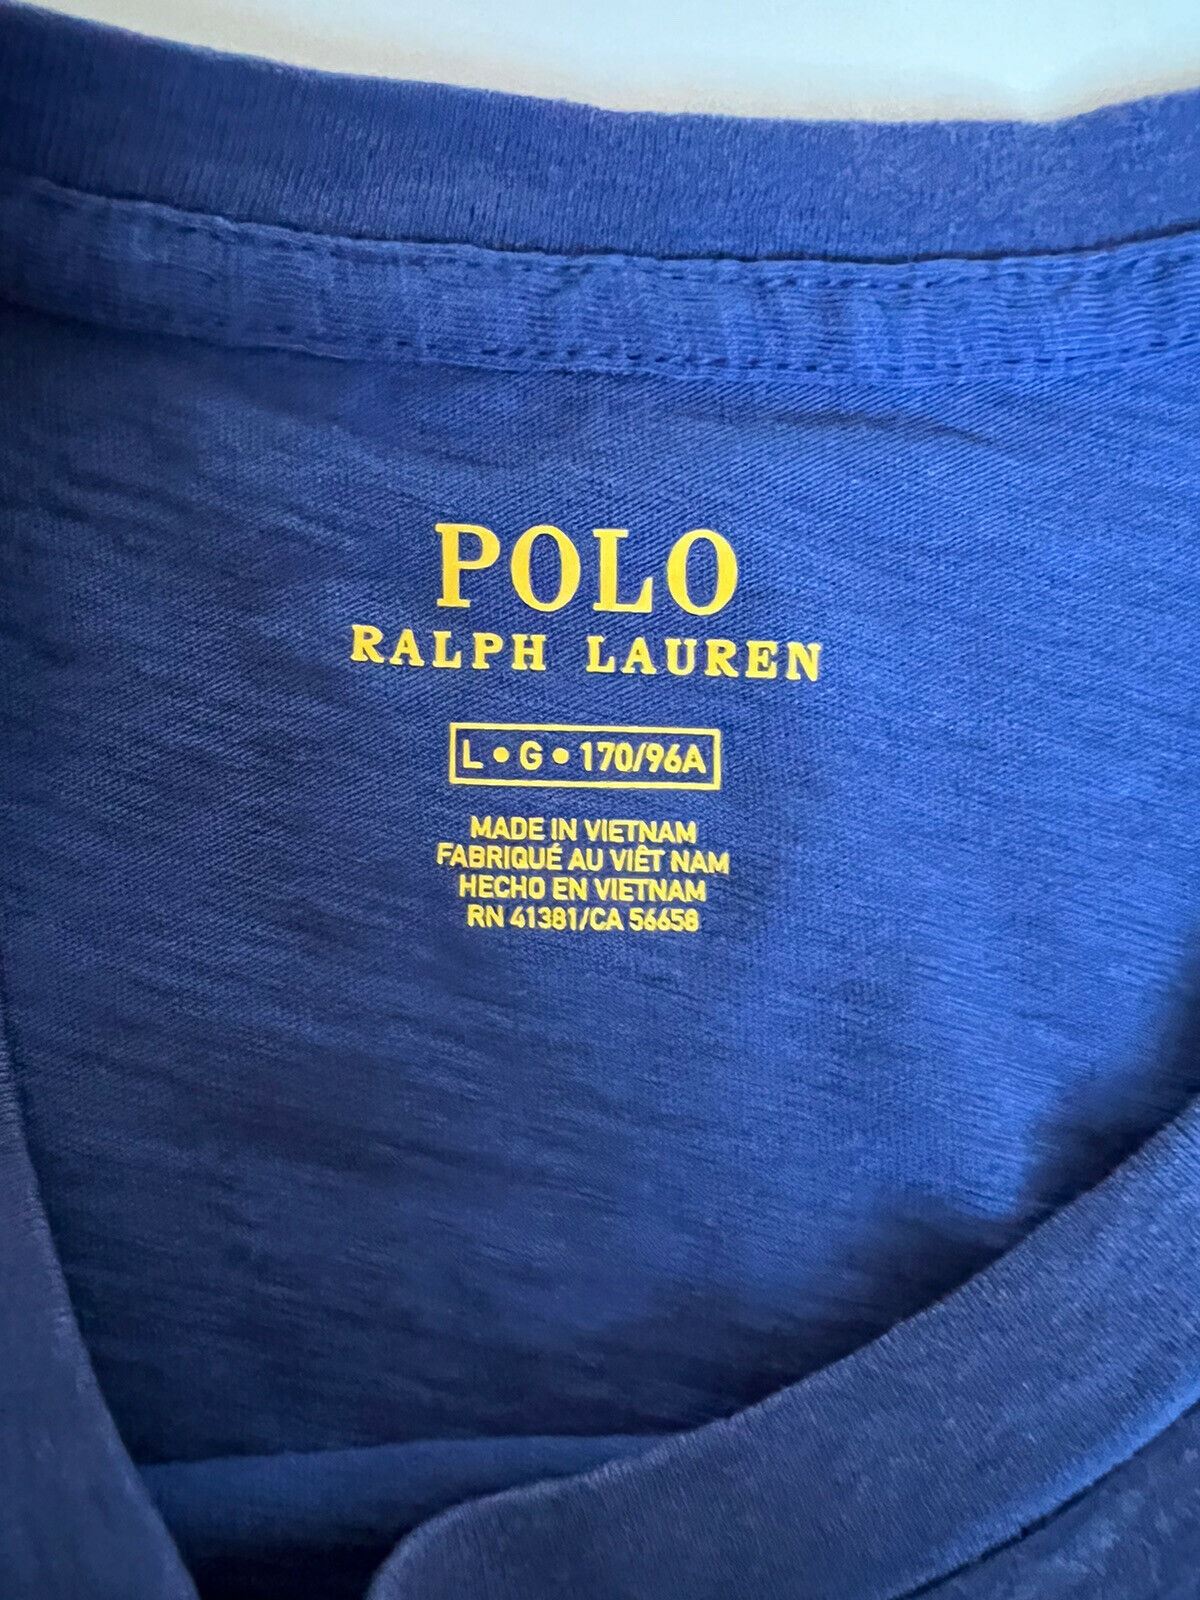 NWT $98 POLO Ralph Lauren Женская королевская темно-синяя футболка с короткими рукавами, большая 